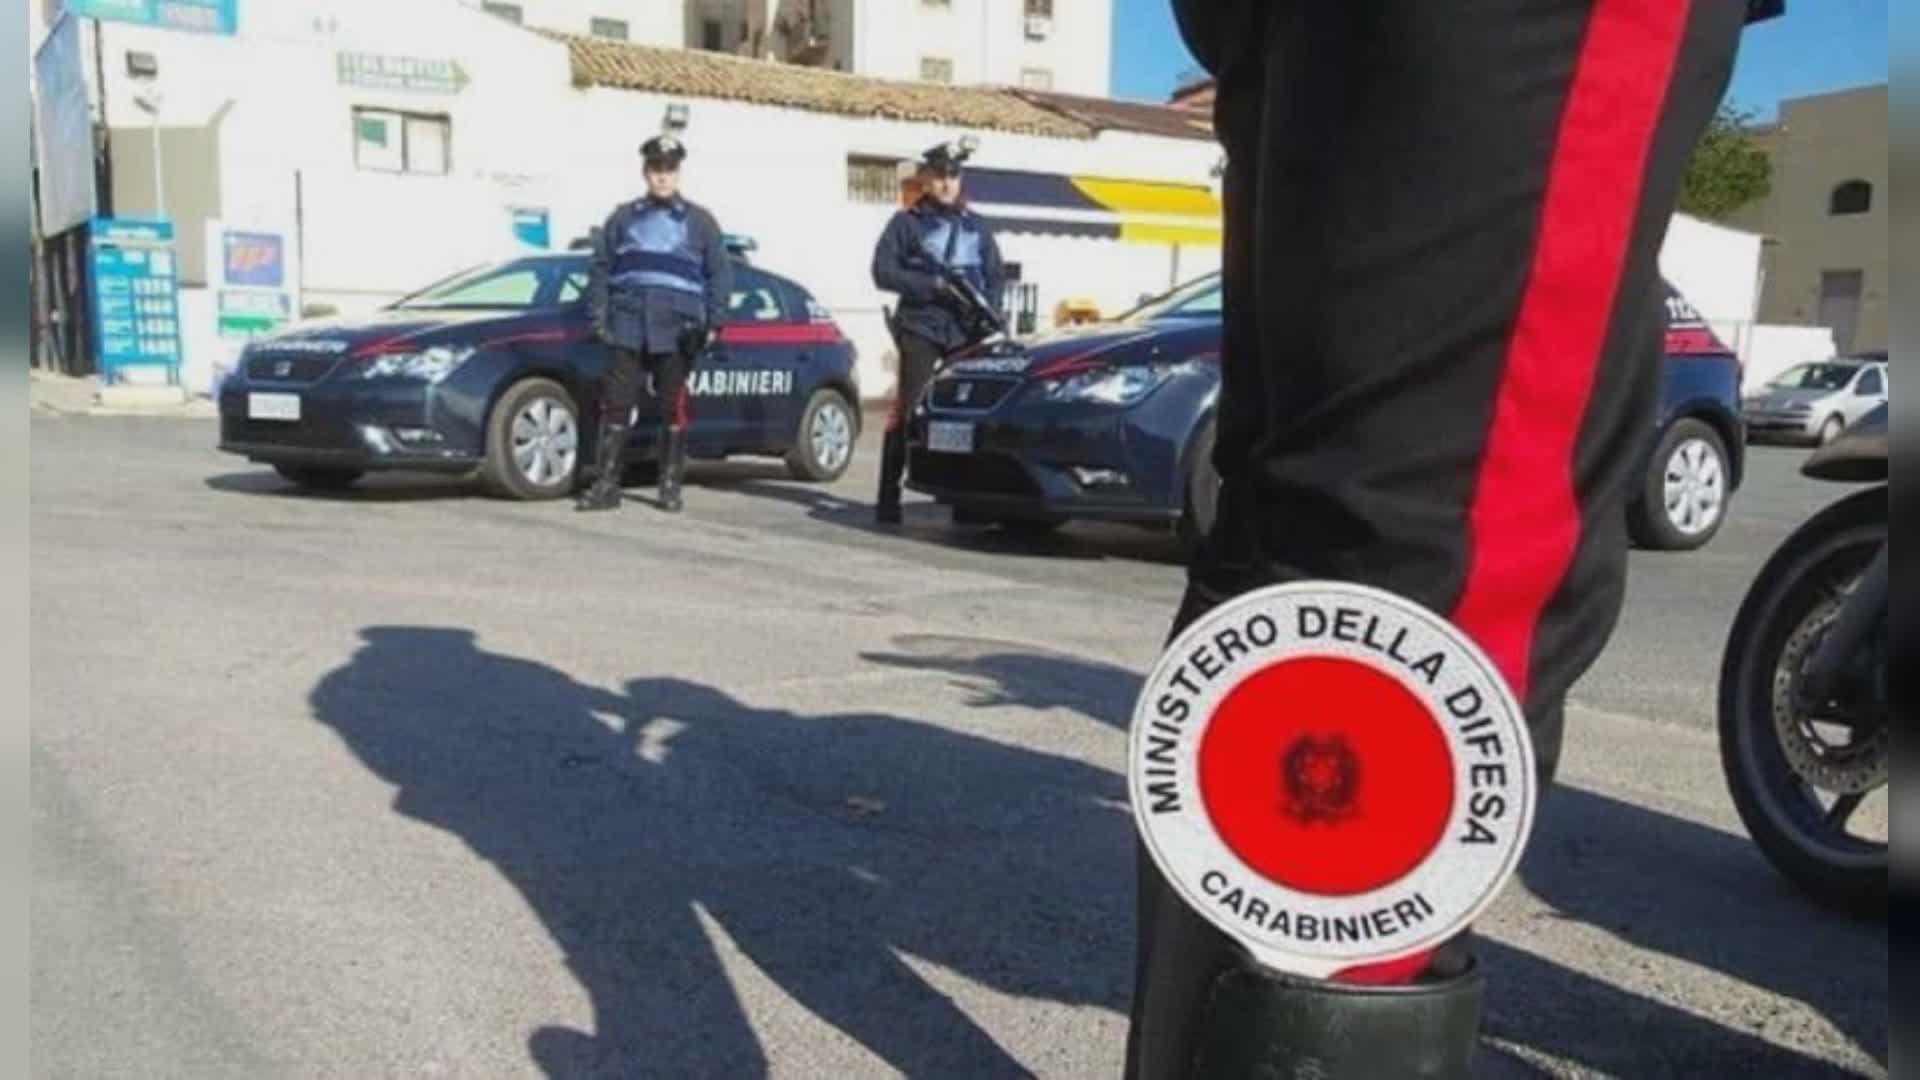 Carabinieri: misure cautelari nei confronti di quattro persone